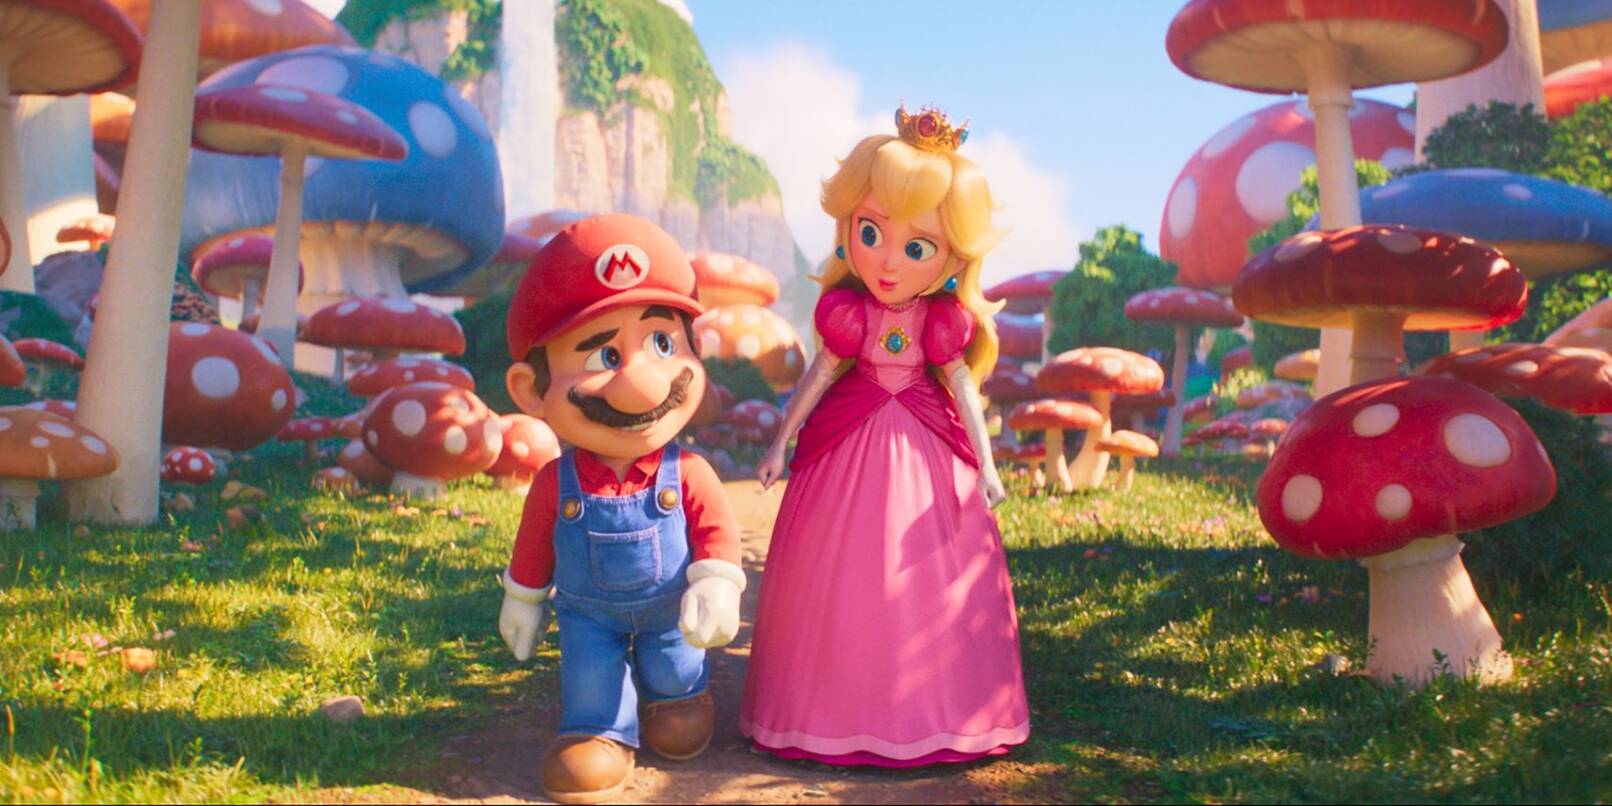 Mario und Prinzessin Peach, die eine talentierte Kämpferin ist.